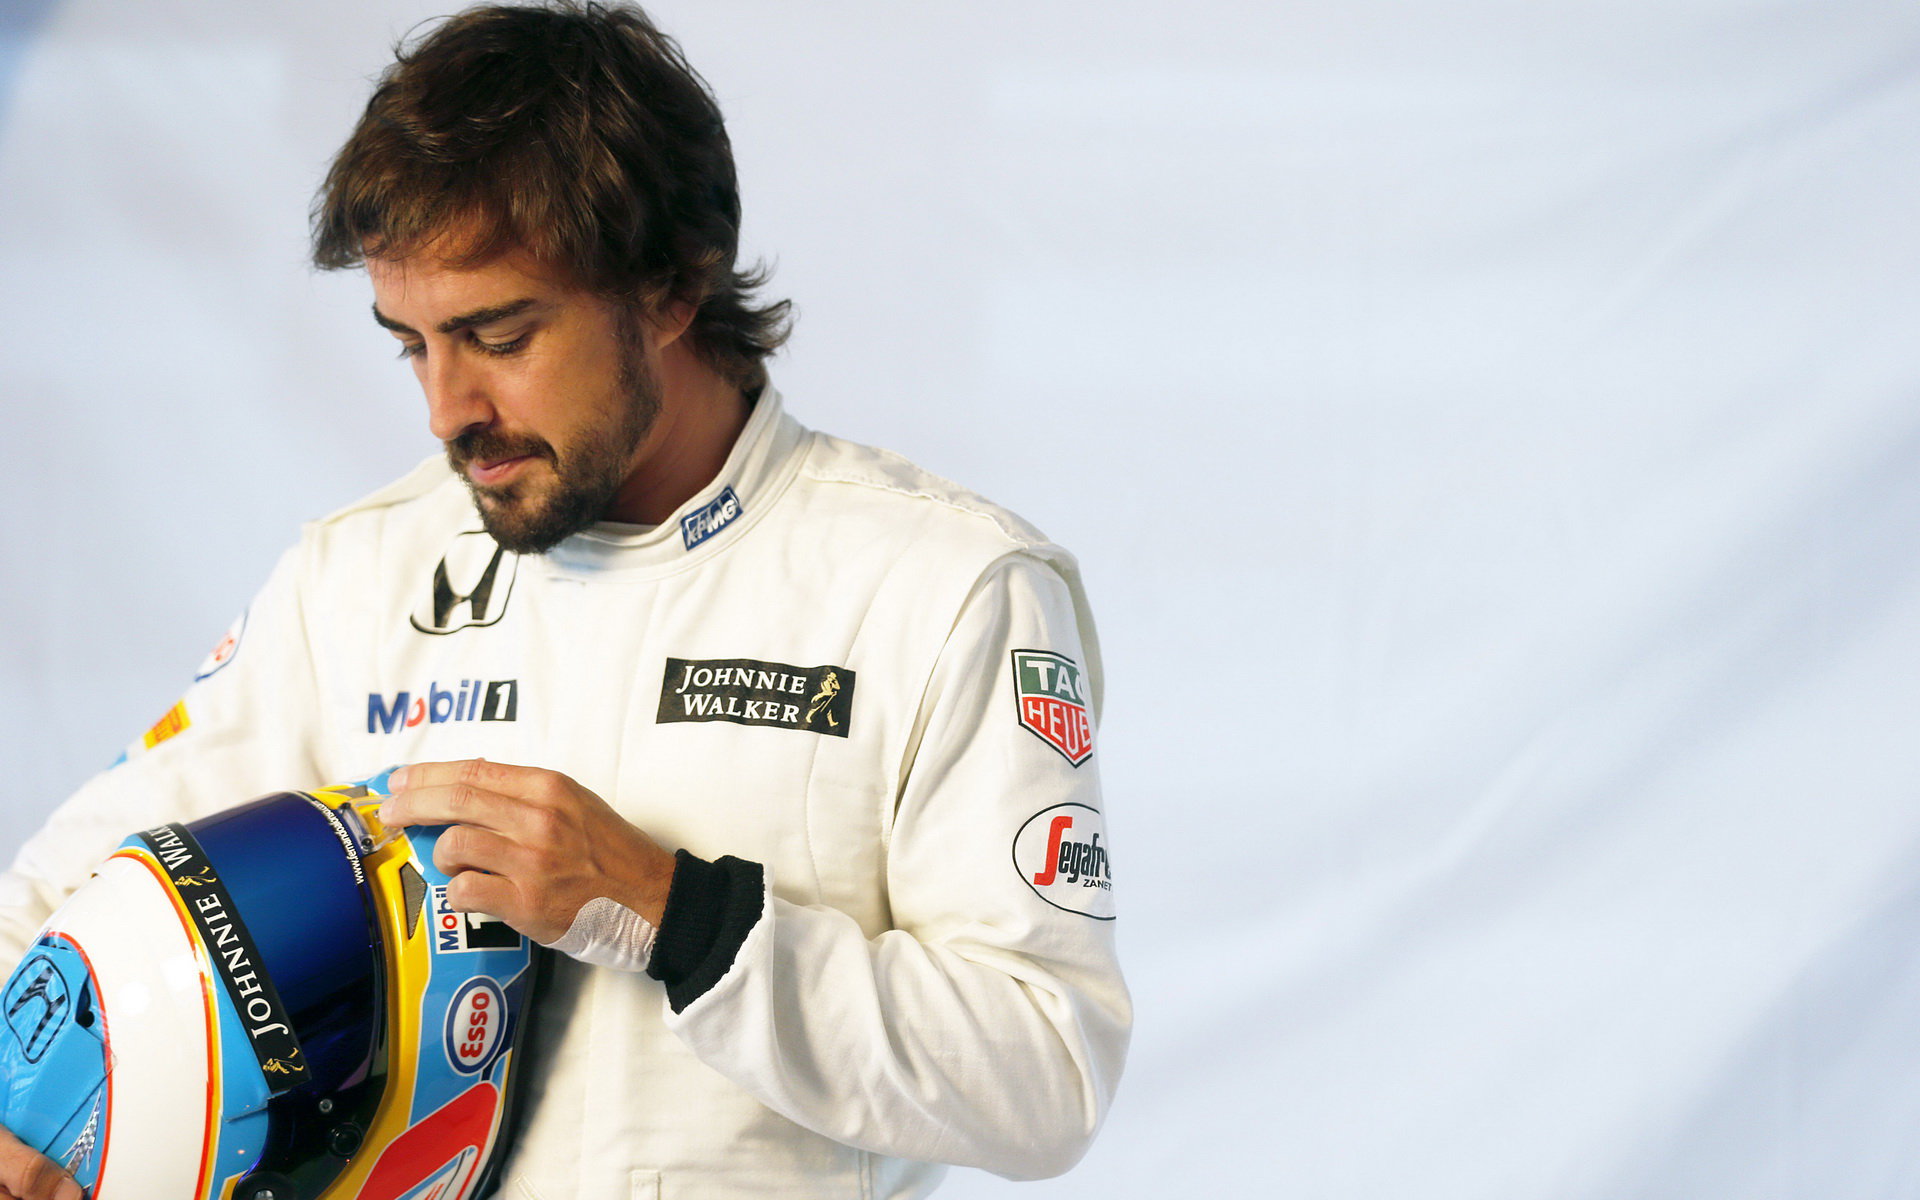 Odchod od Ferrari byl nevyhnutelný, tvrdí Alonso